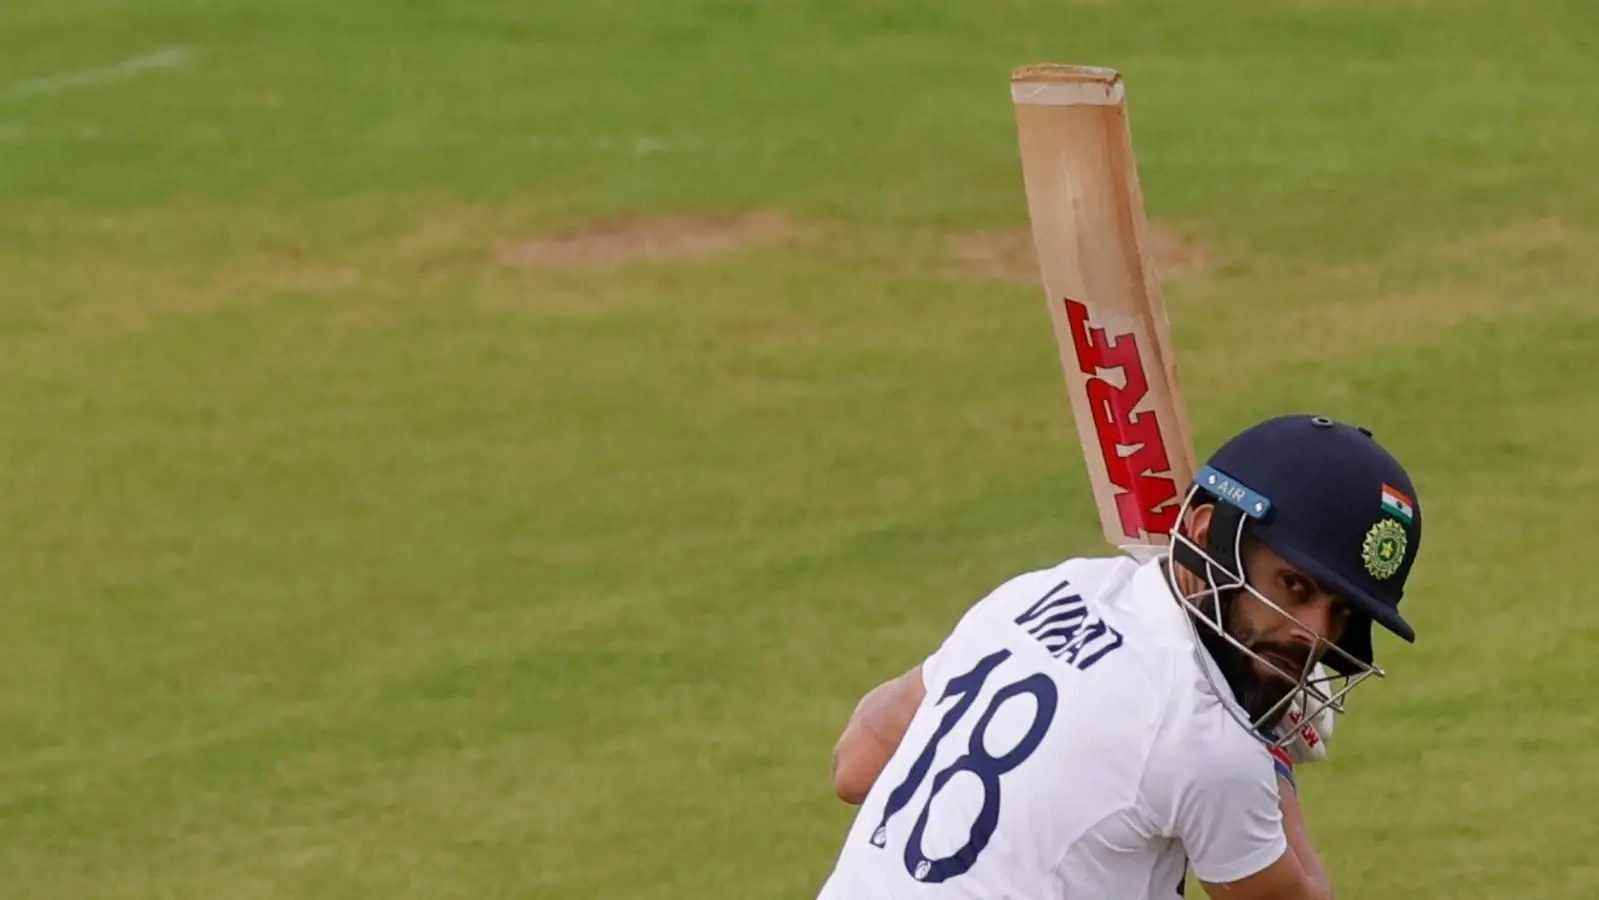  देखें: अभ्यास मैच में छक्का लगाने के लिए विराट कोहली अपर-कट जसप्रीत बुमराह |  क्रिकेट
